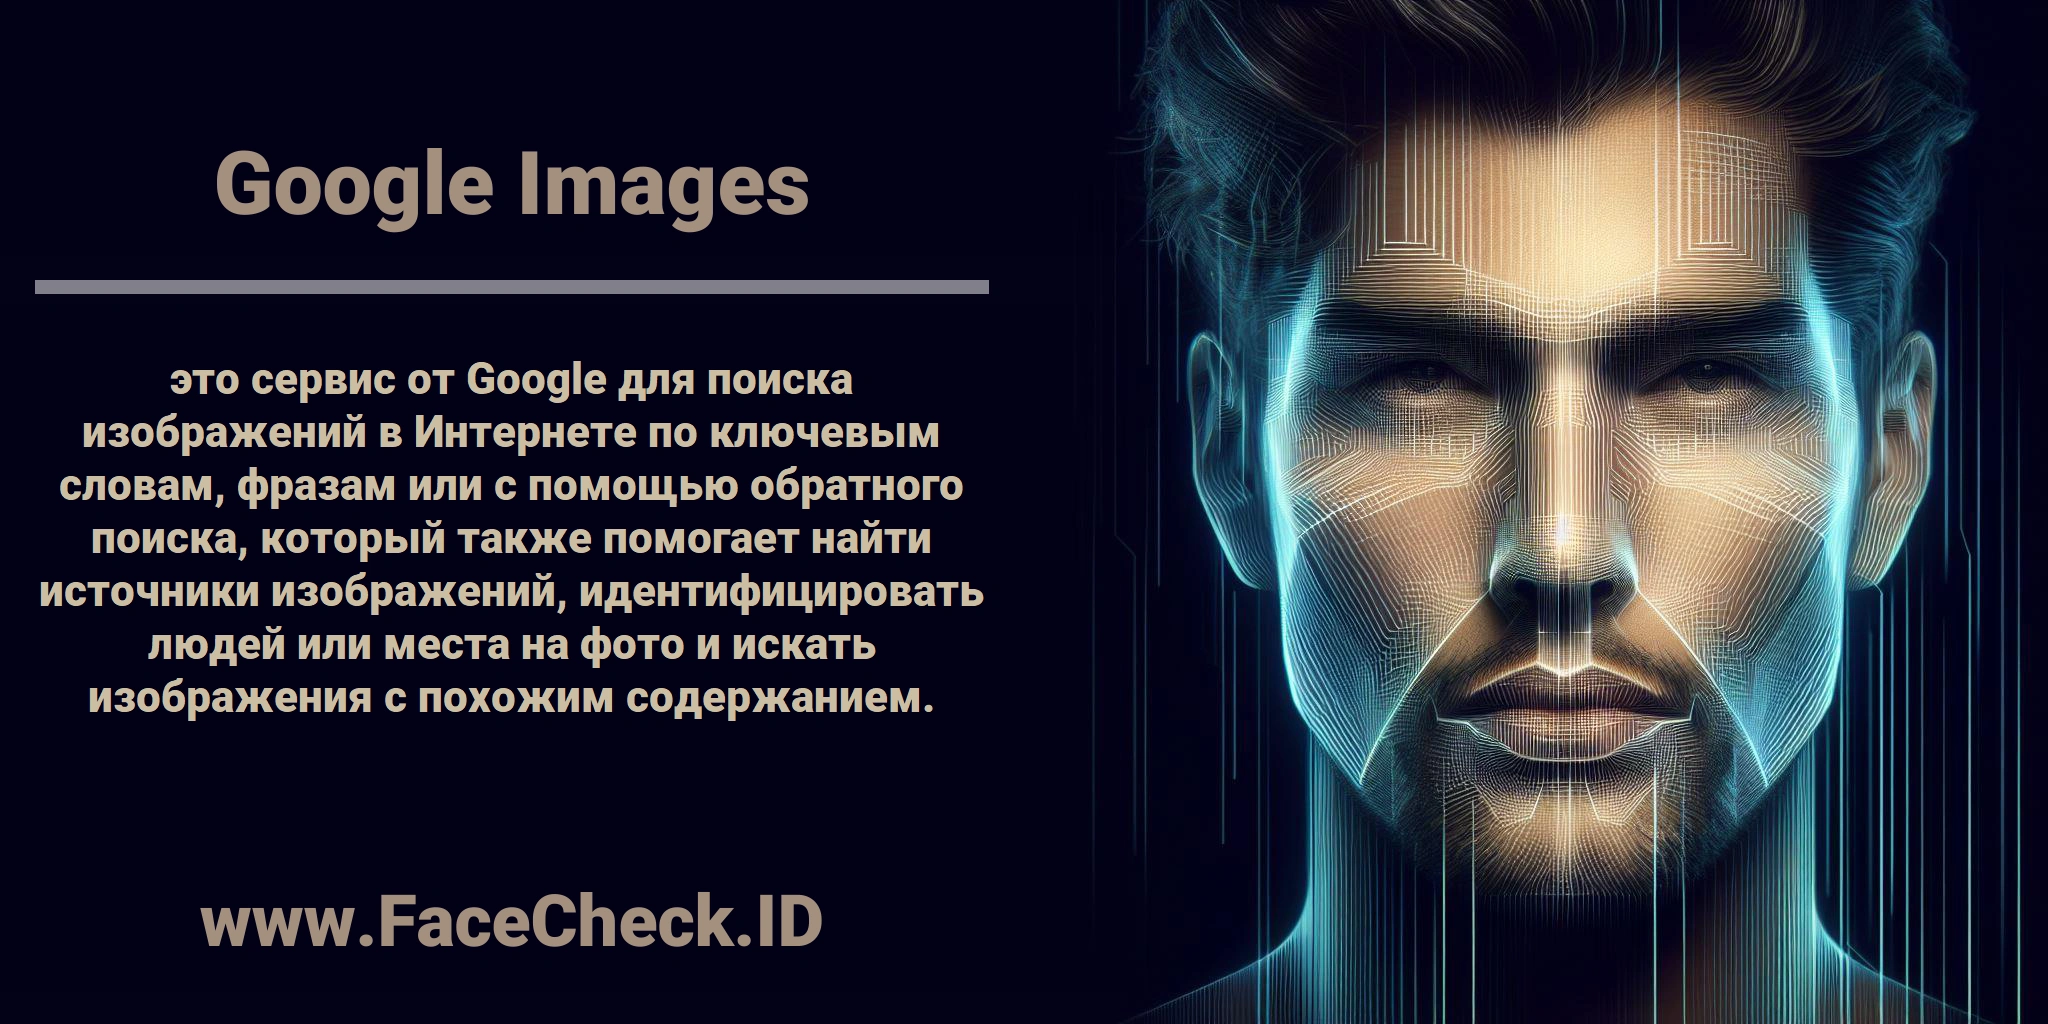 <b>Google Images</b> это сервис от Google для поиска изображений в Интернете по ключевым словам, фразам или с помощью обратного поиска, который также помогает найти источники изображений, идентифицировать людей или места на фото и искать изображения с похожим содержанием.